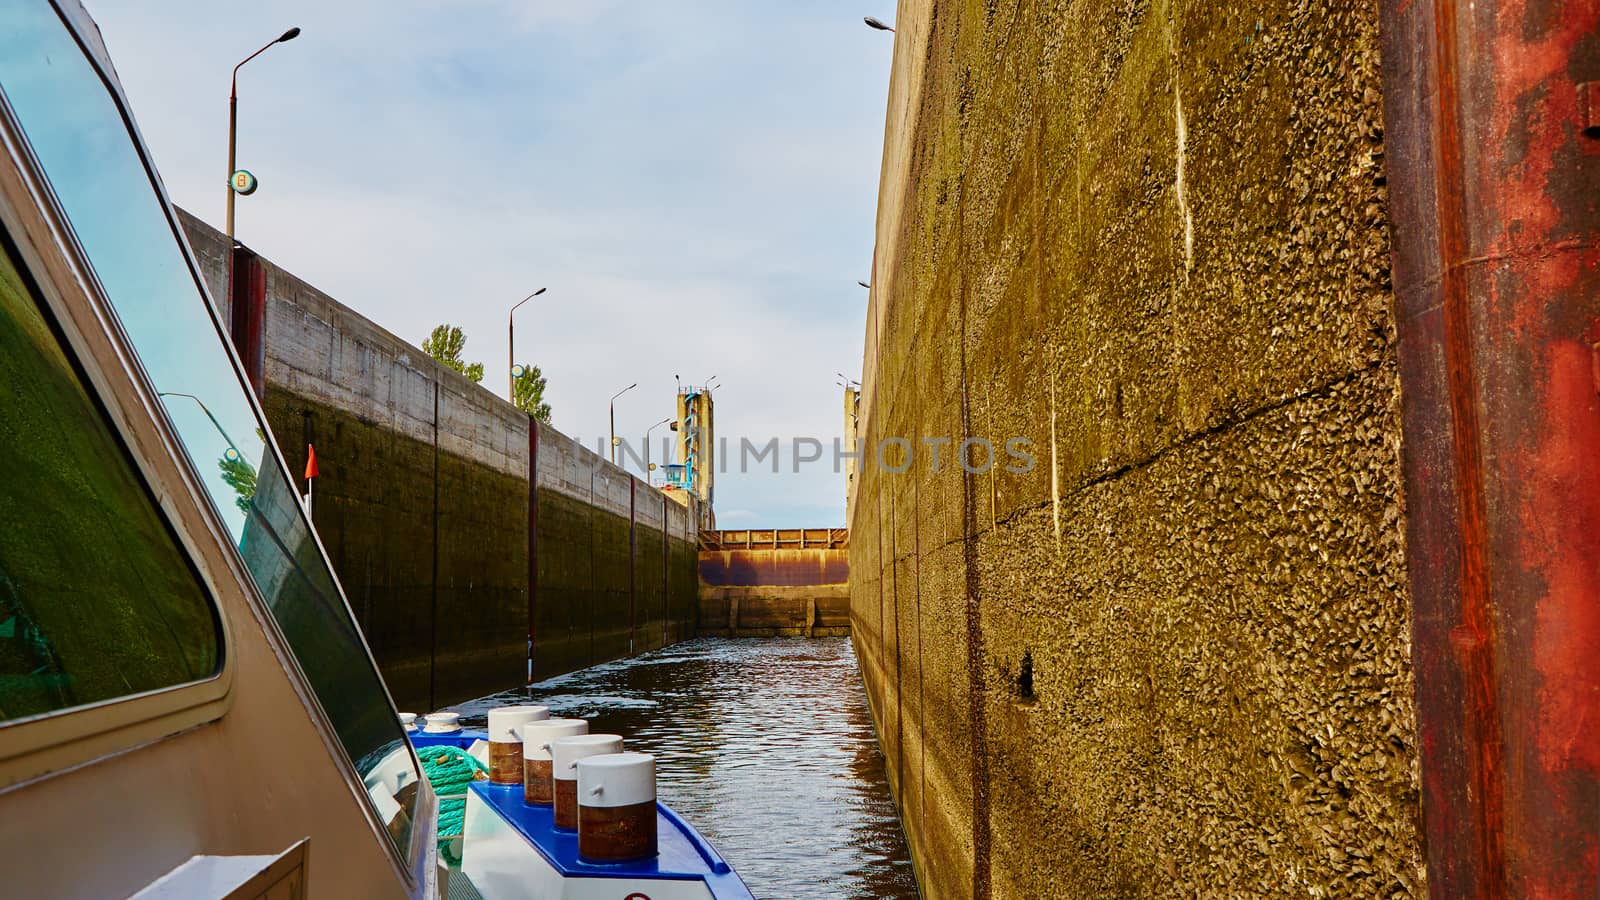 One of the locks on navigable river  by sarymsakov